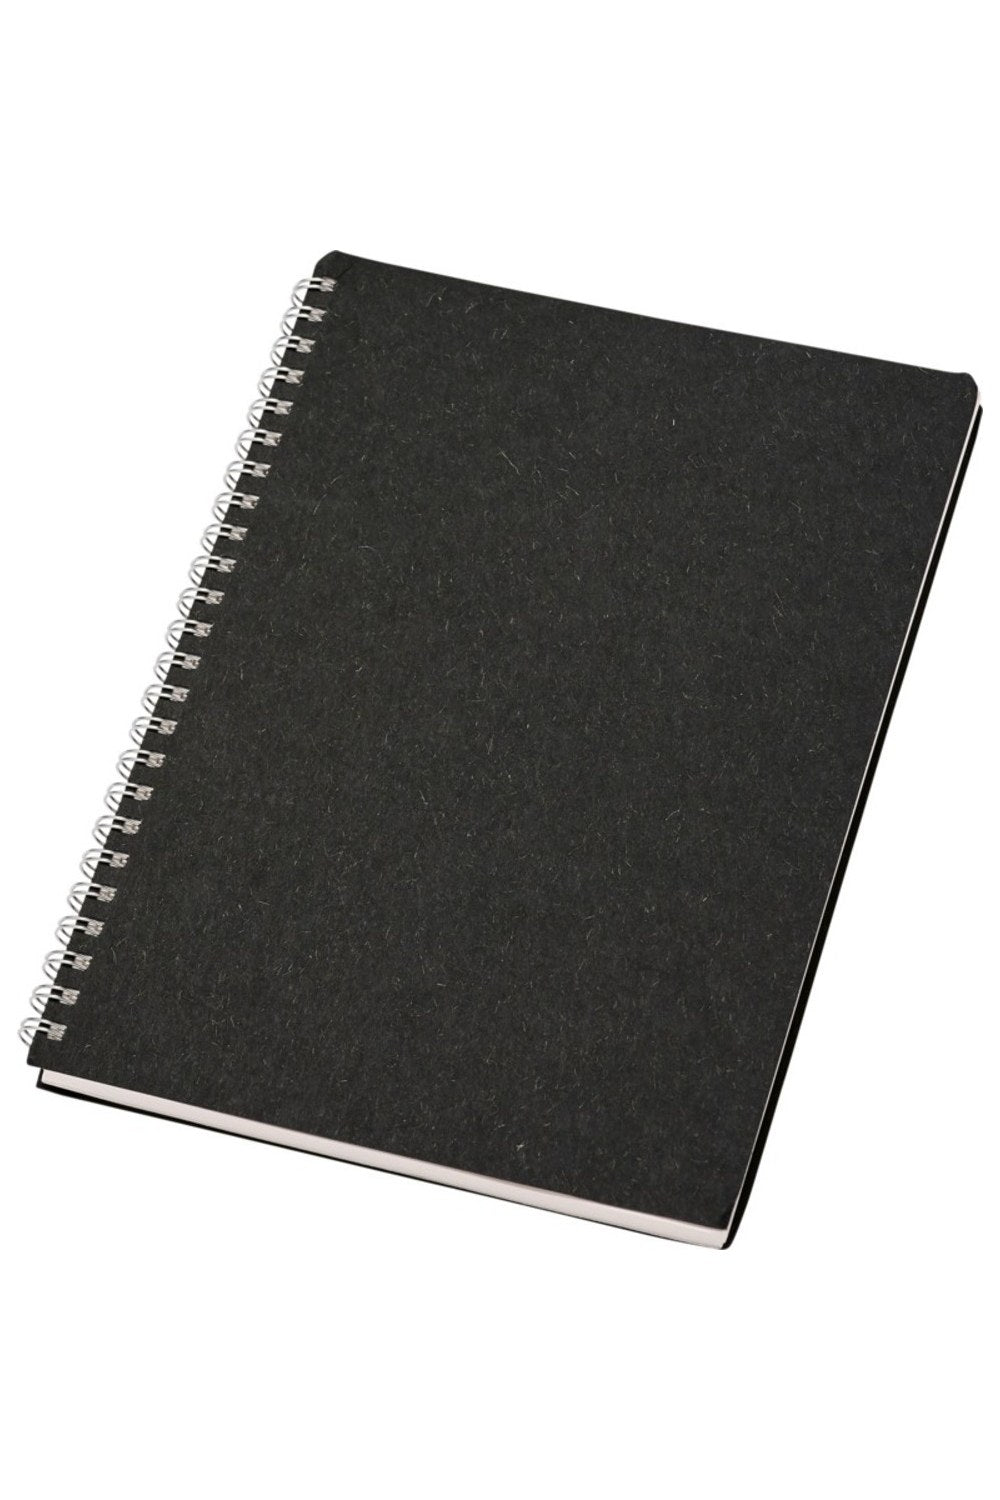 Luxe Nero A5 Wirebound Notebook